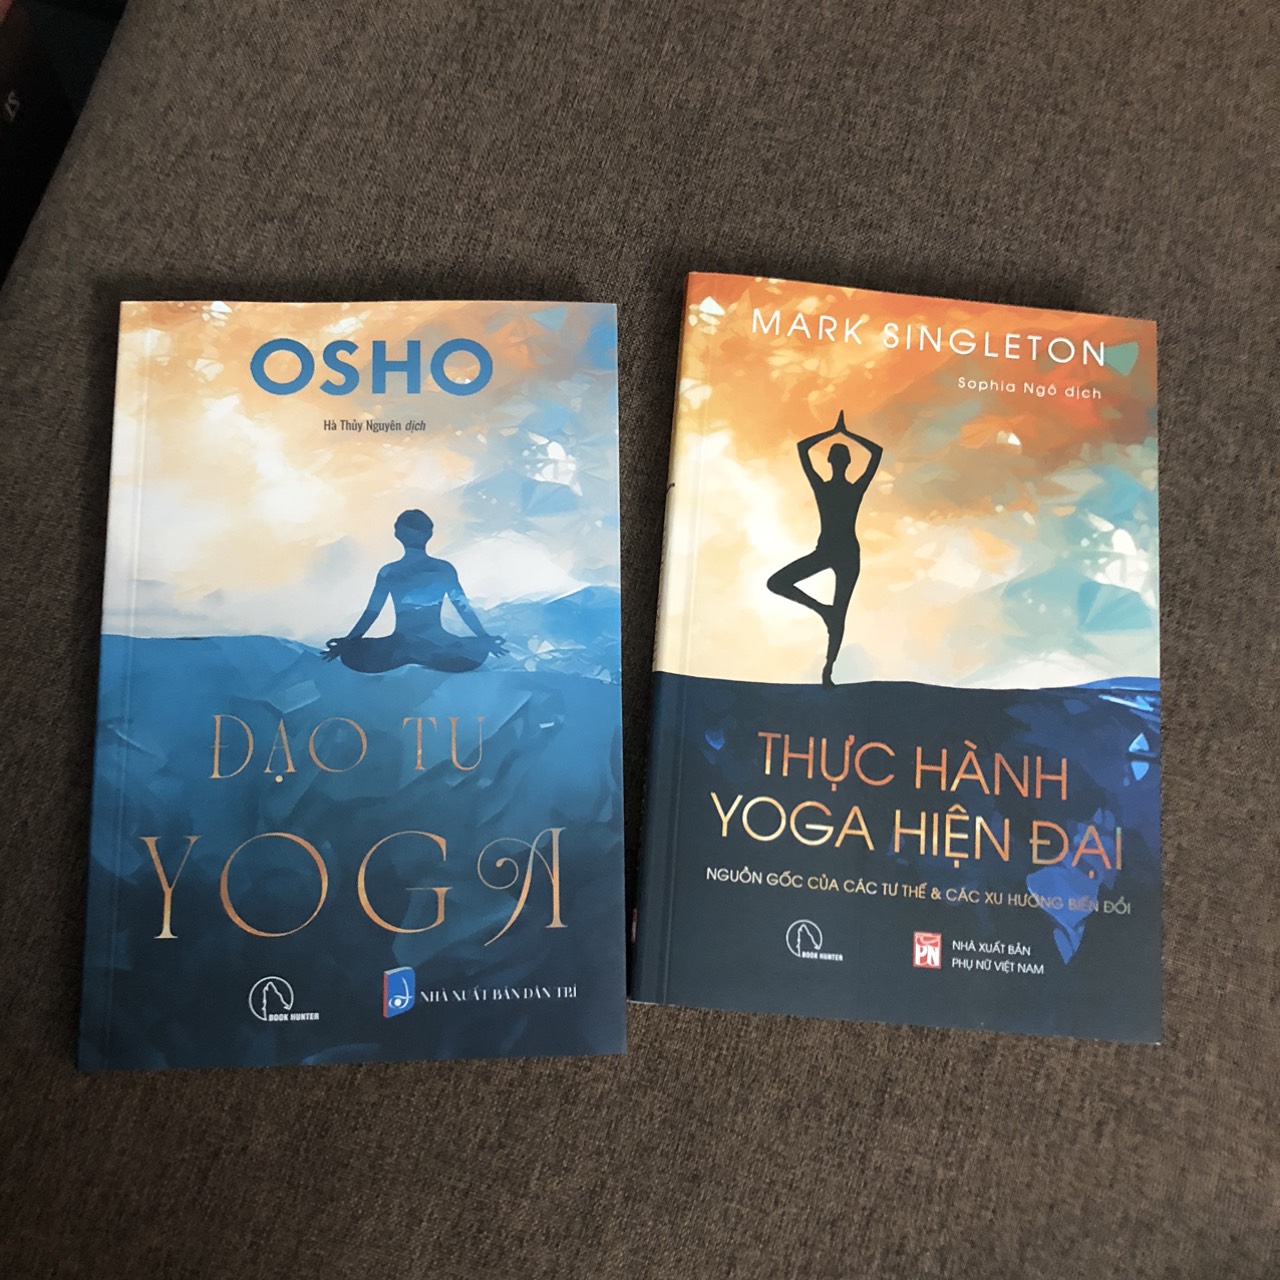 Yoga từ góc nhìn hiện đại: Bộ 2 cuốn: Đạo tu Yoga (Osho) + Thực hành Yoga hiện đại – Nguồn gốc các tư thế &amp; các xu hướng biến đổi (Mark Singleton)